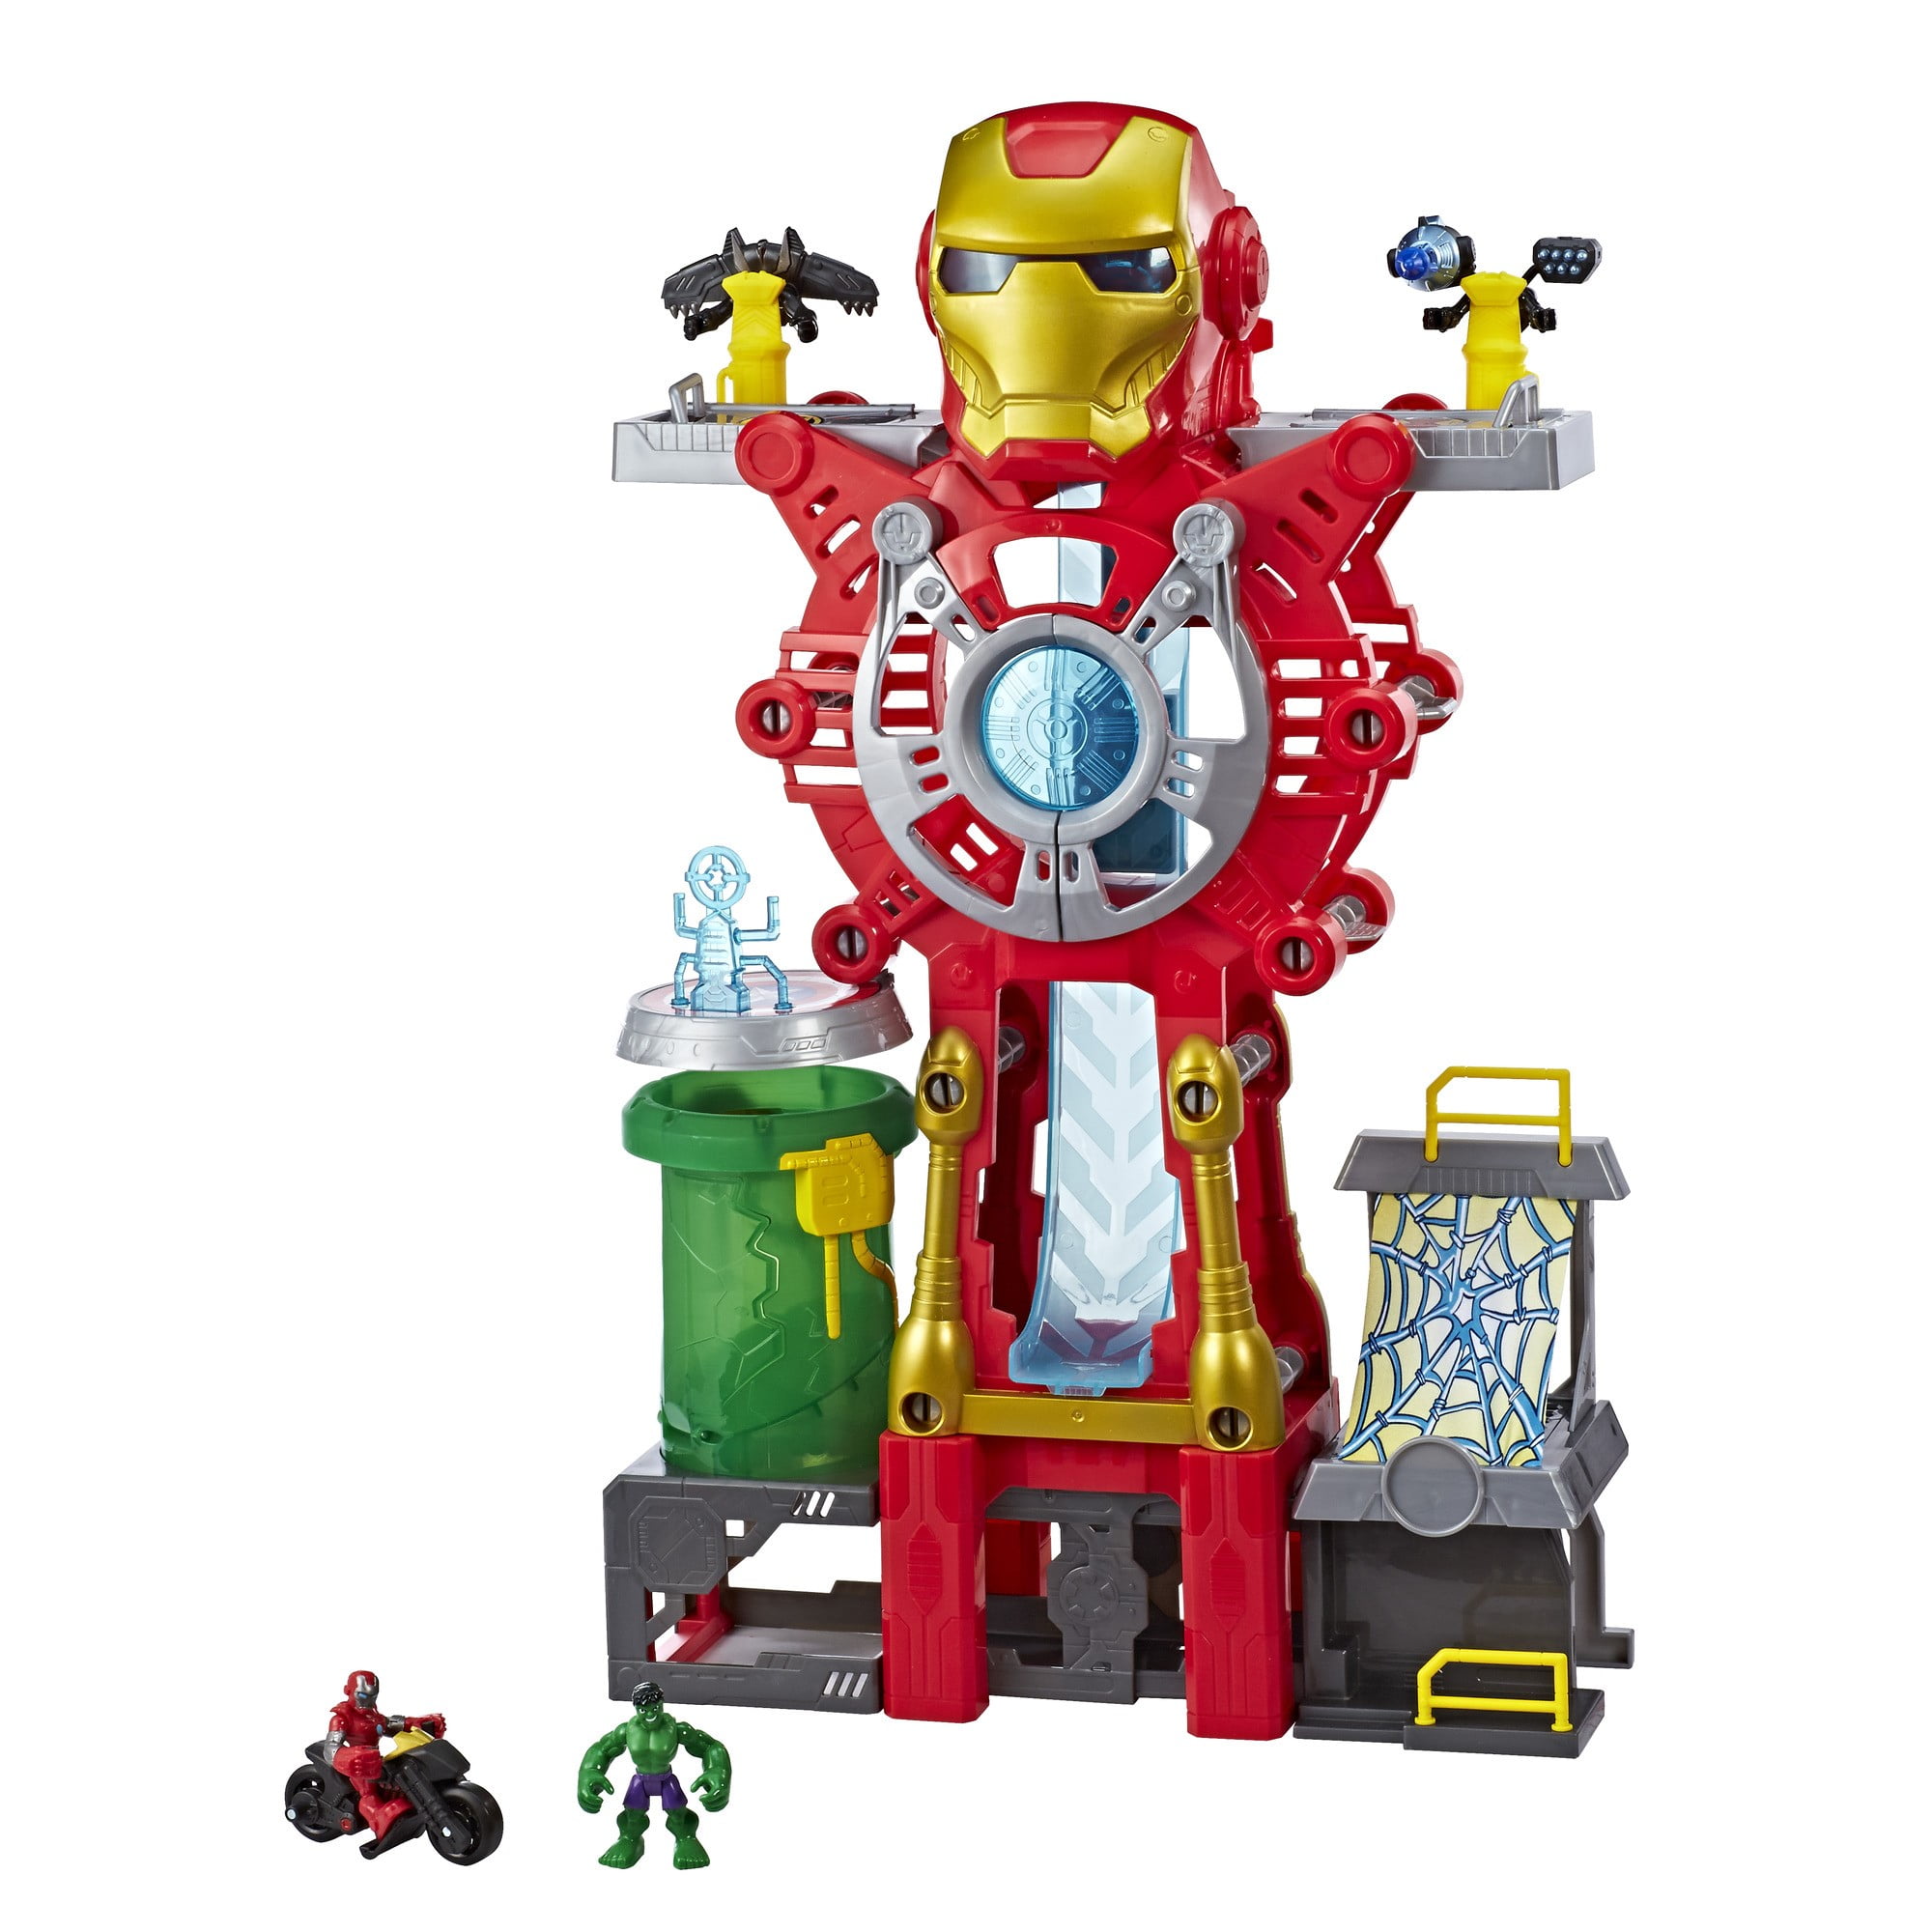 Iron Man Avengers Building Blocks Marvel Toys For Children Heroes Robot New 2019 